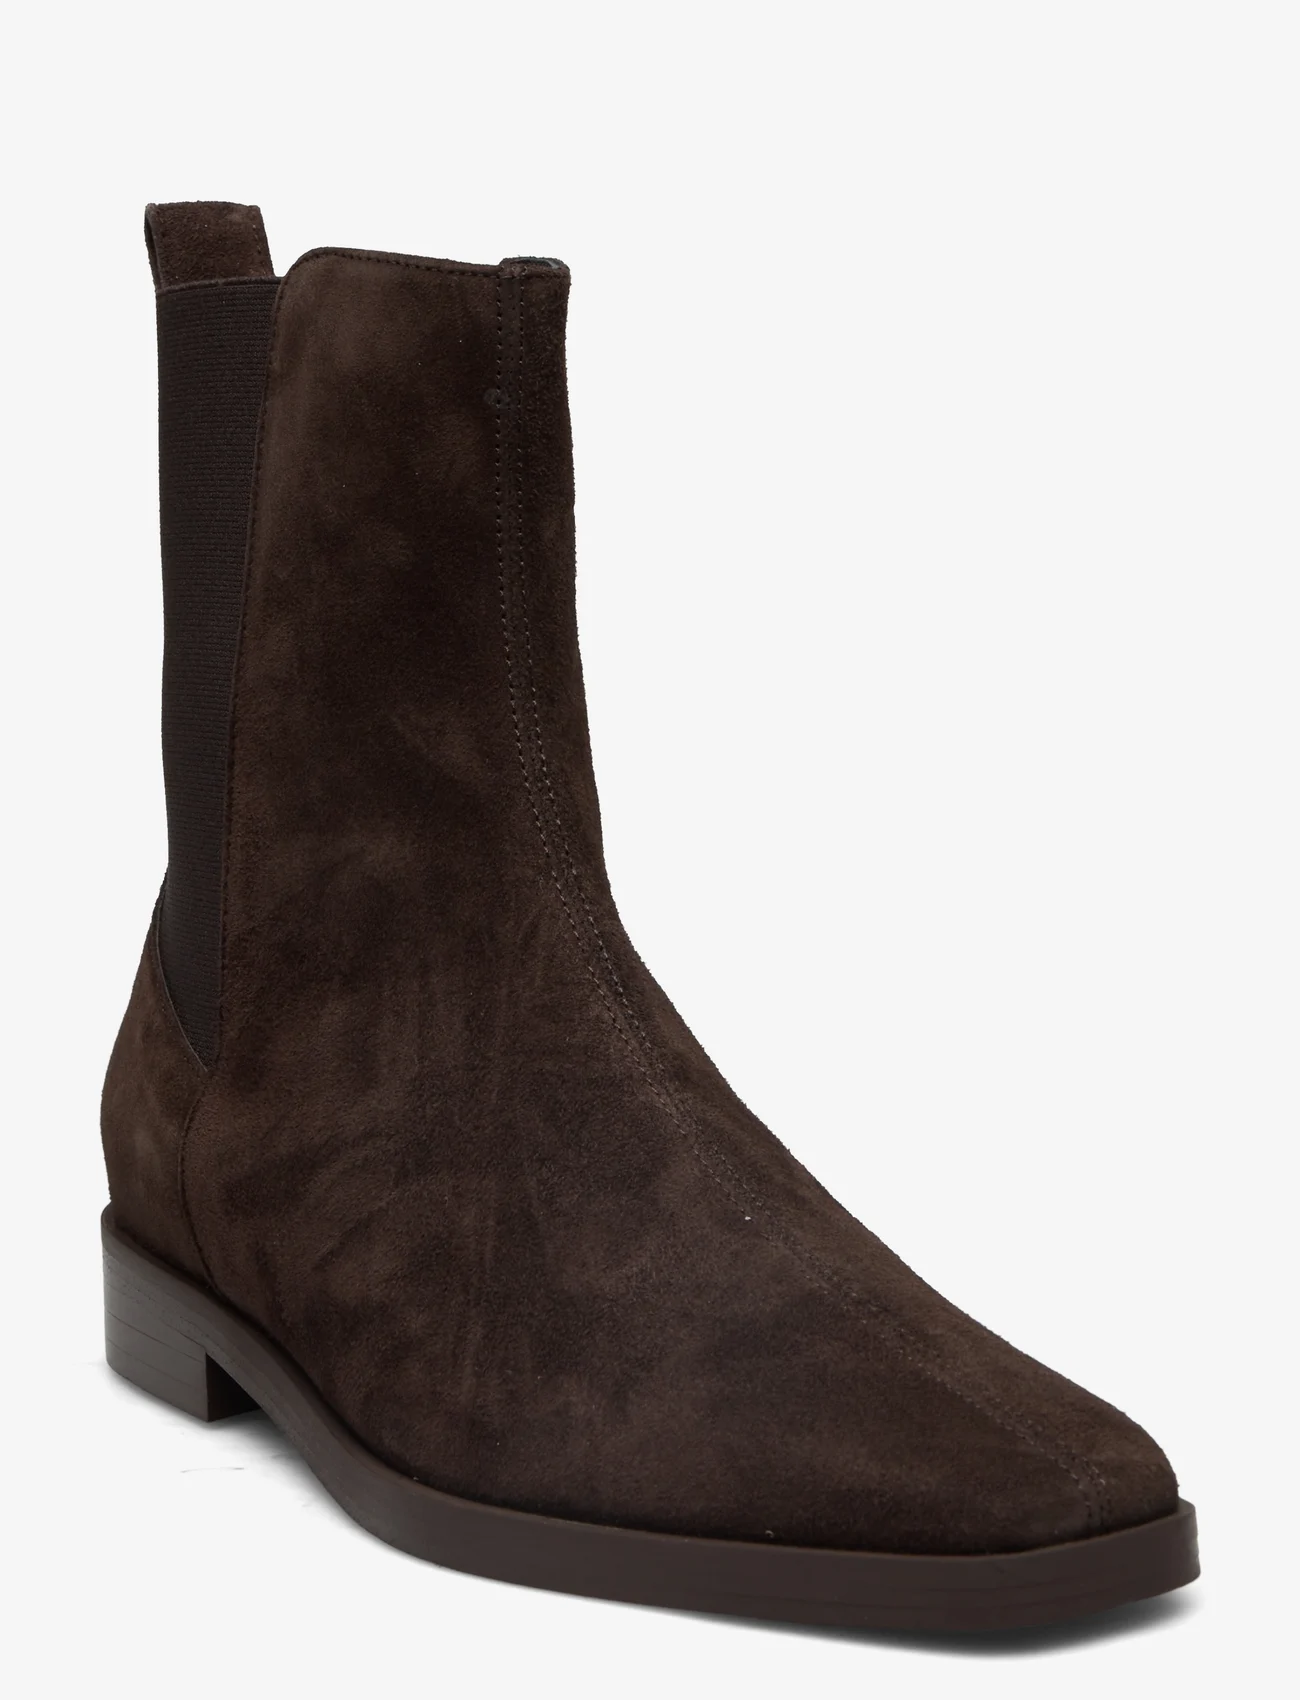 Billi Bi - Boots - flache stiefeletten - dark brown   suede - 0